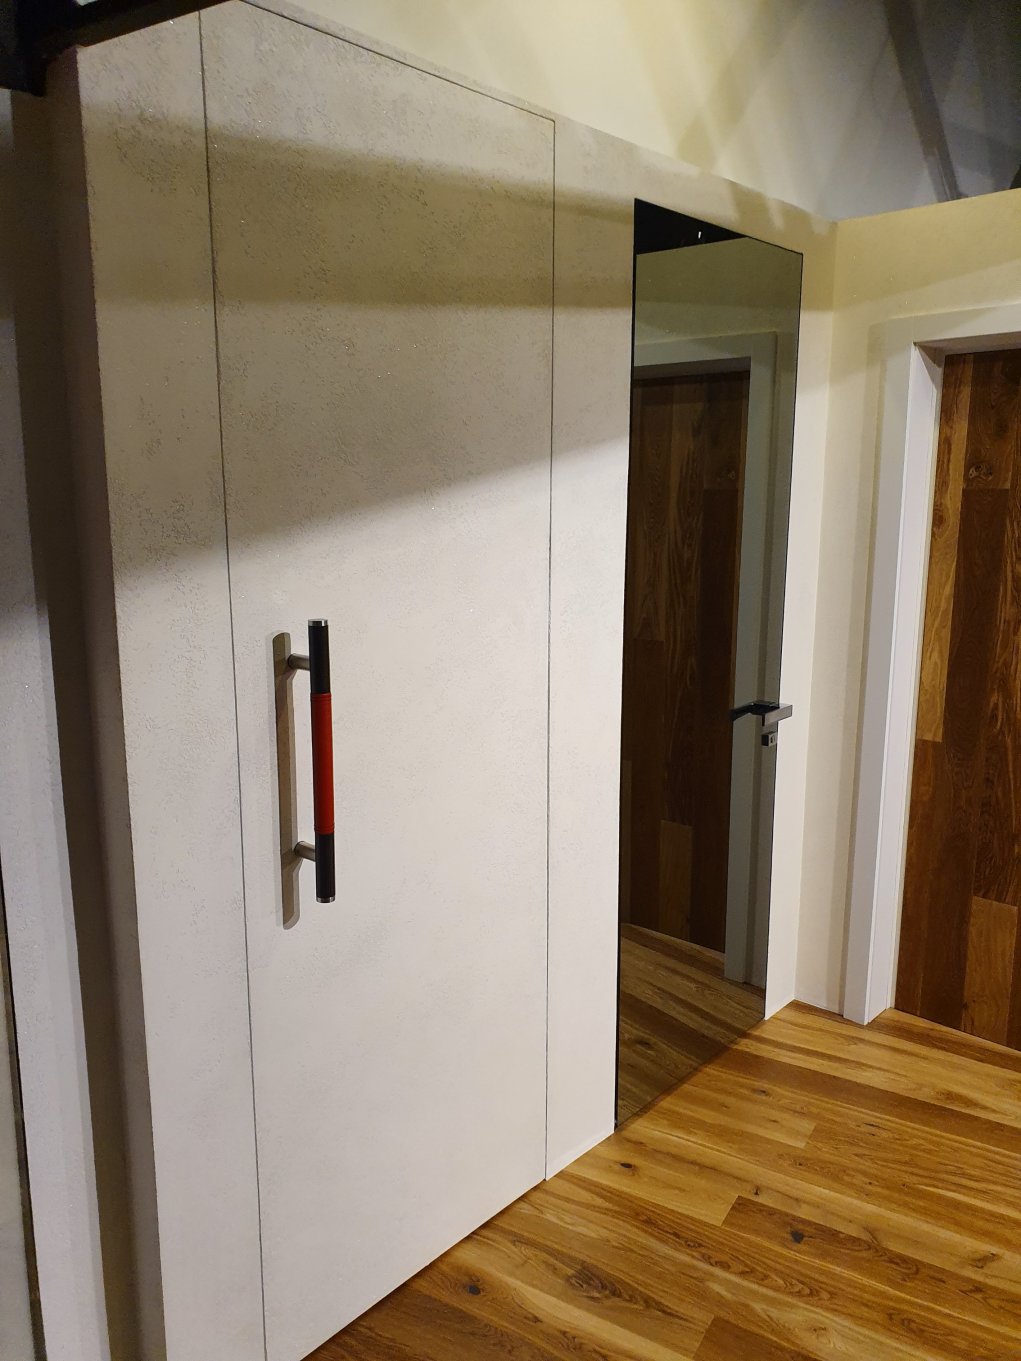 Salon drzwi drims home concept